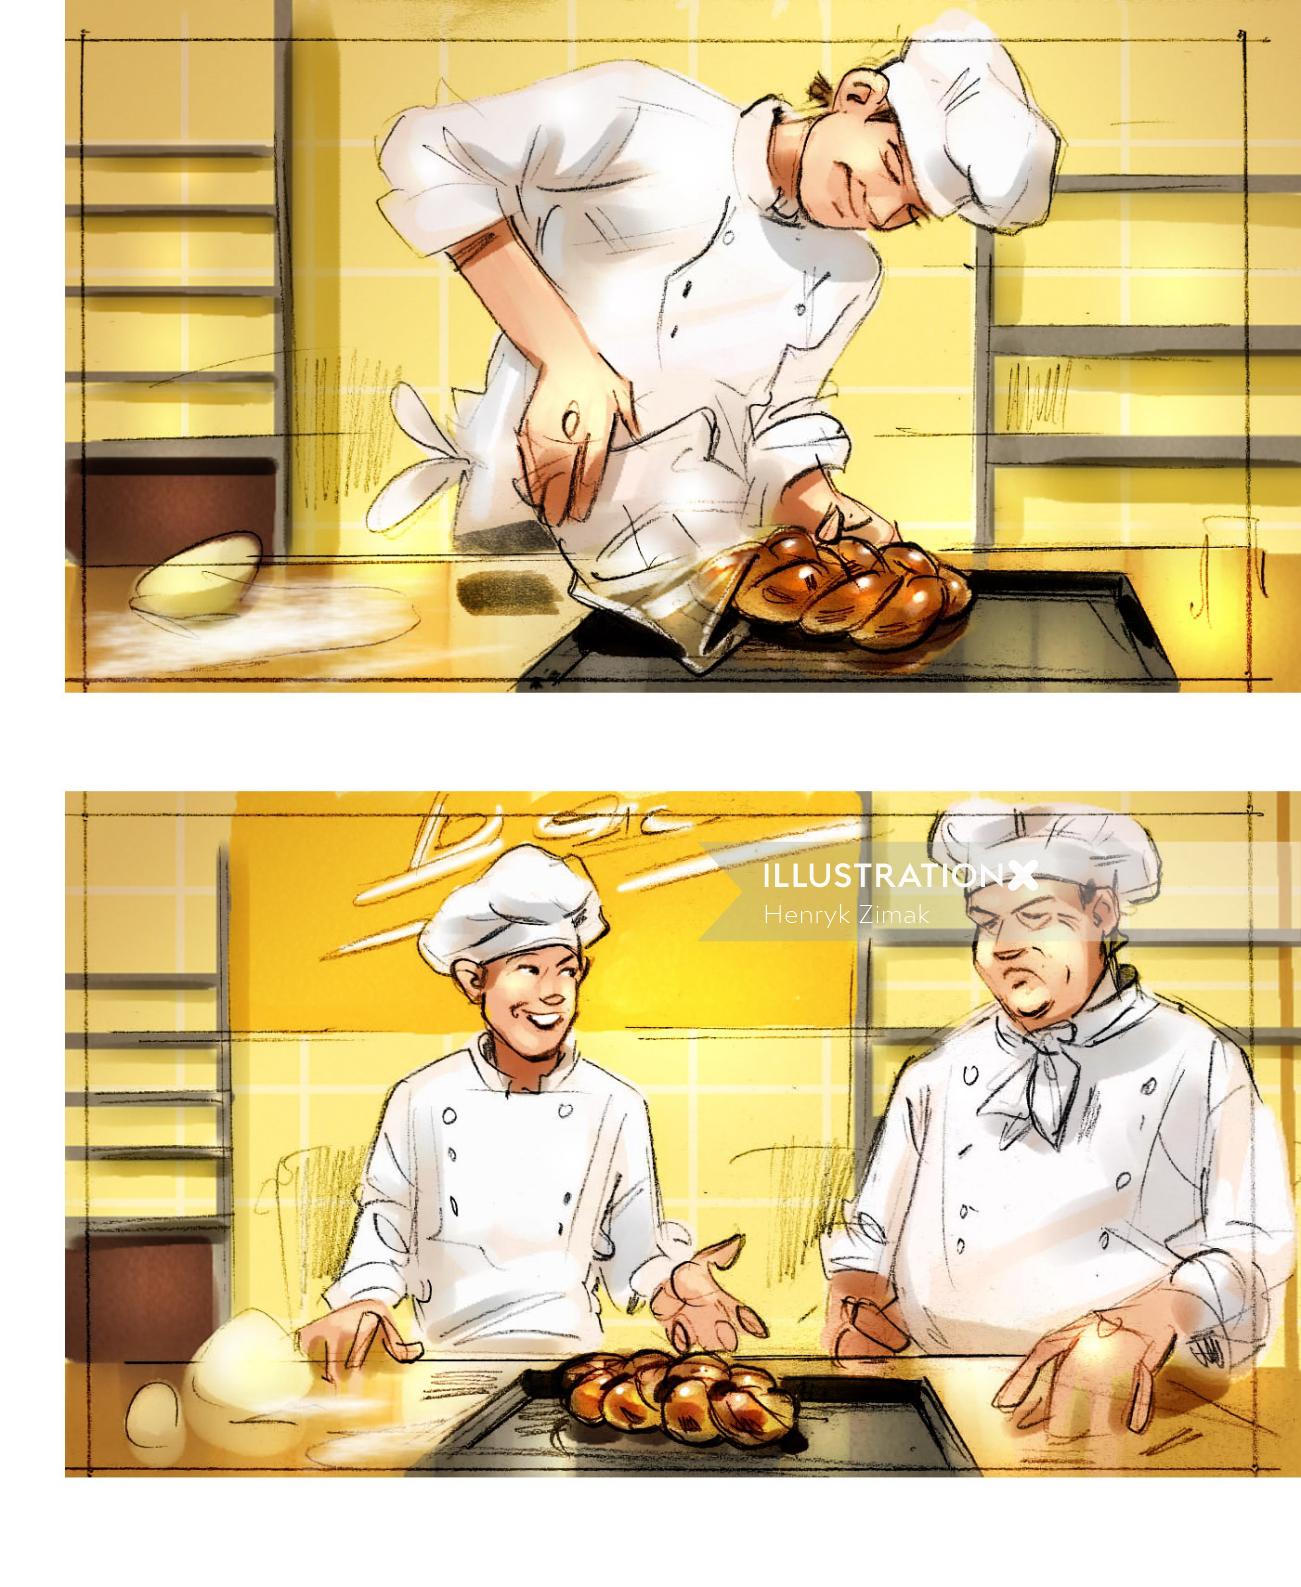 Illustration of chef 